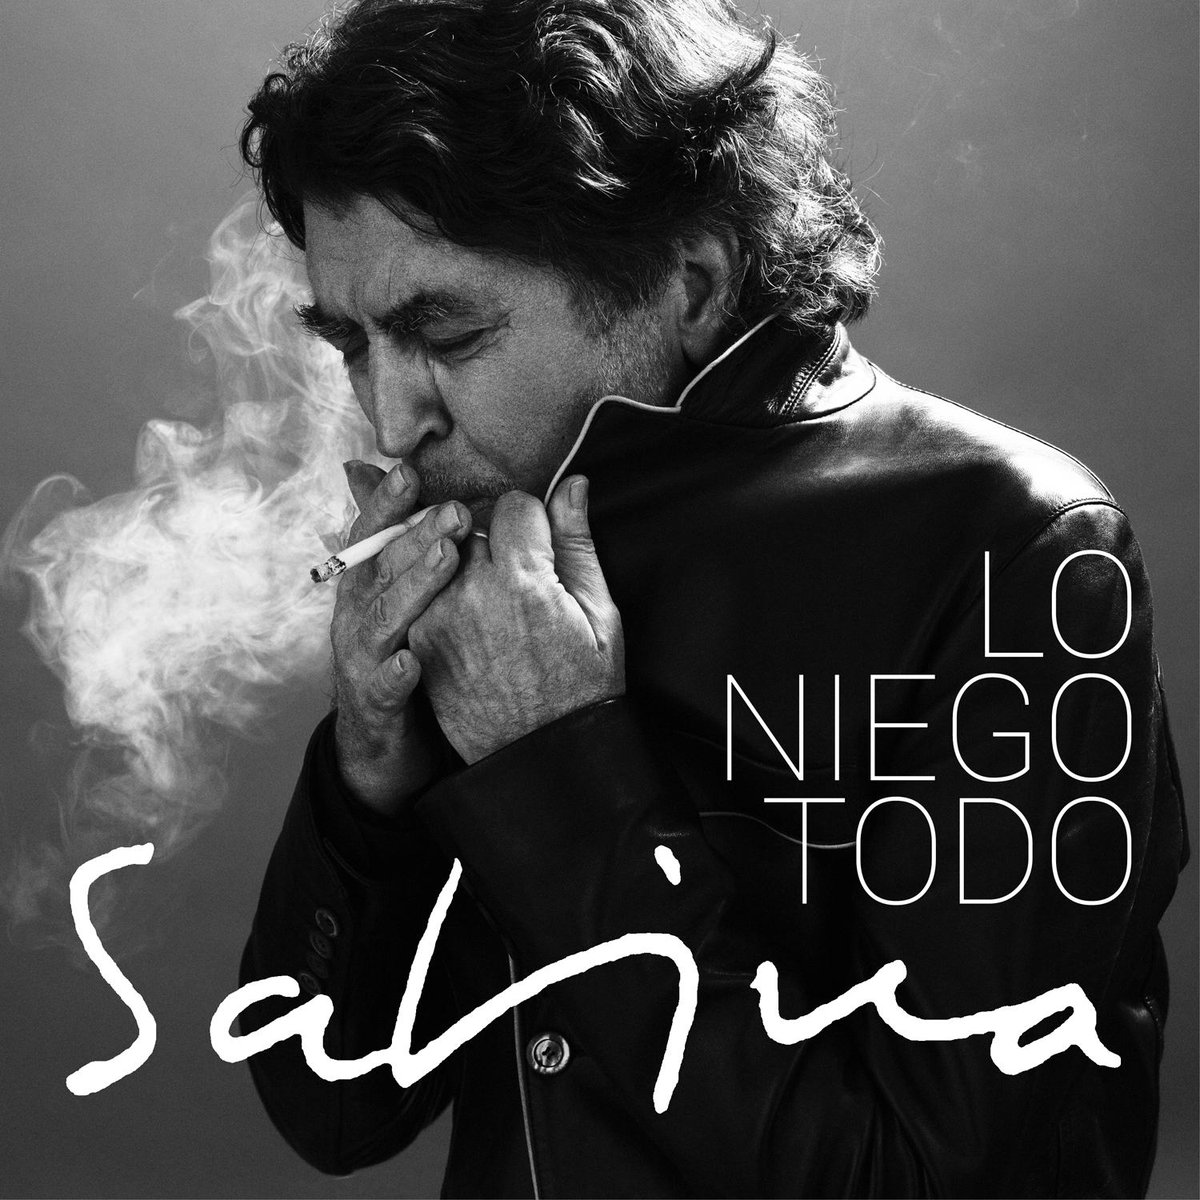 'Lo niego todo', el nuevo disco de Sabina. Twitter